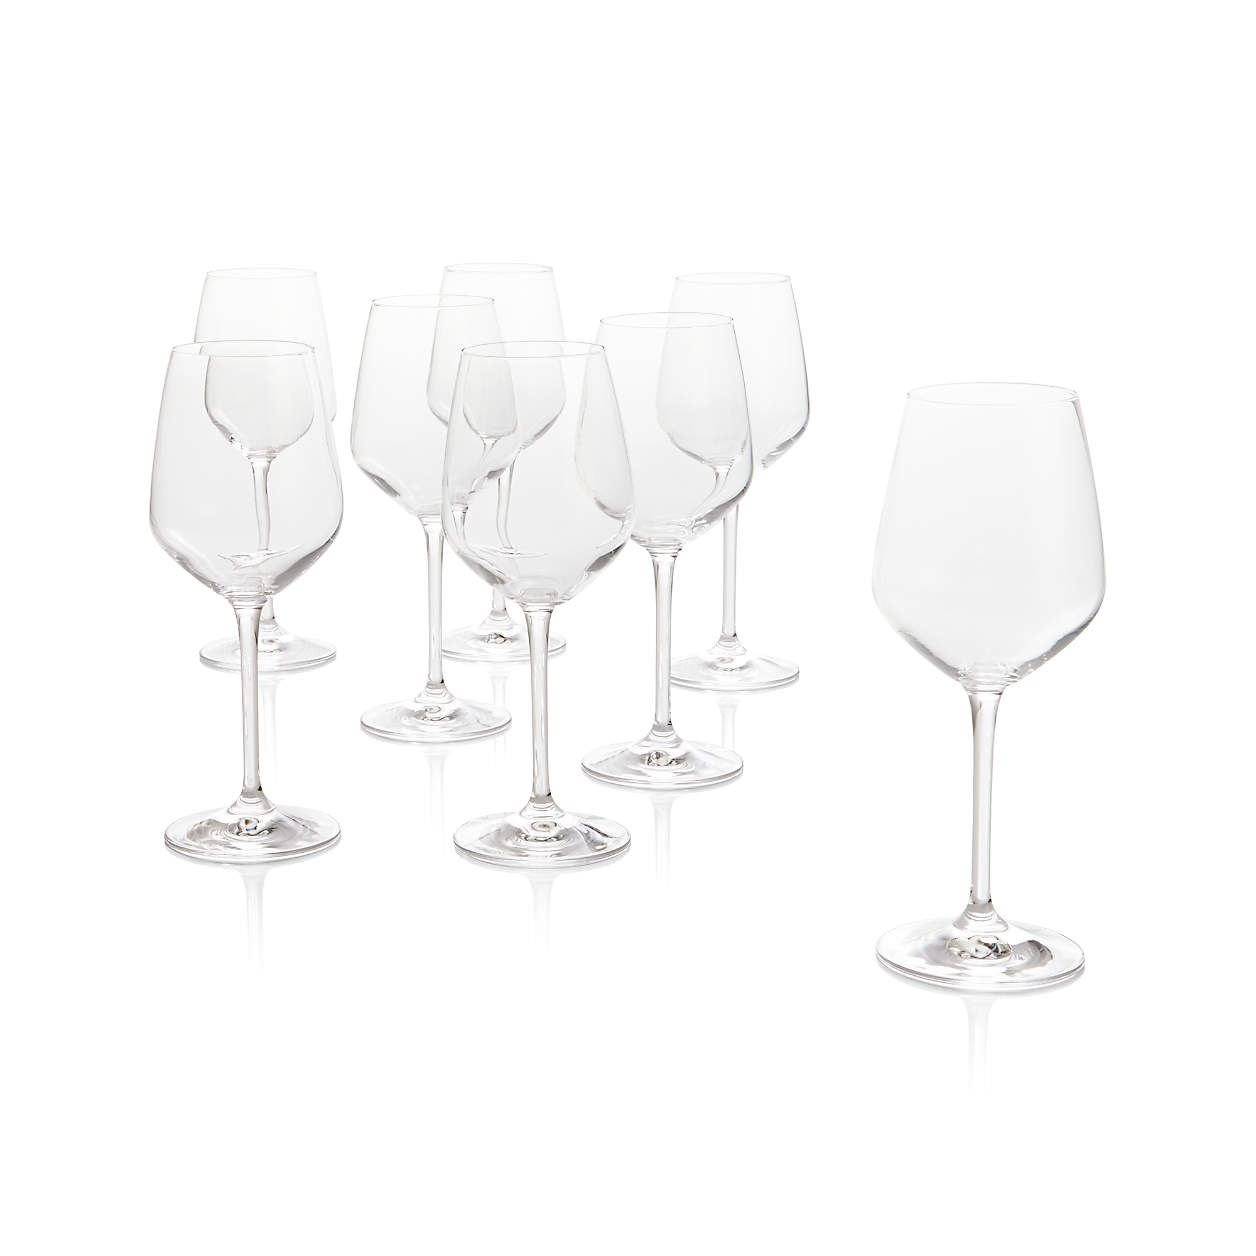 Nattie White Wine Glasses, Set of 8 - Image 0